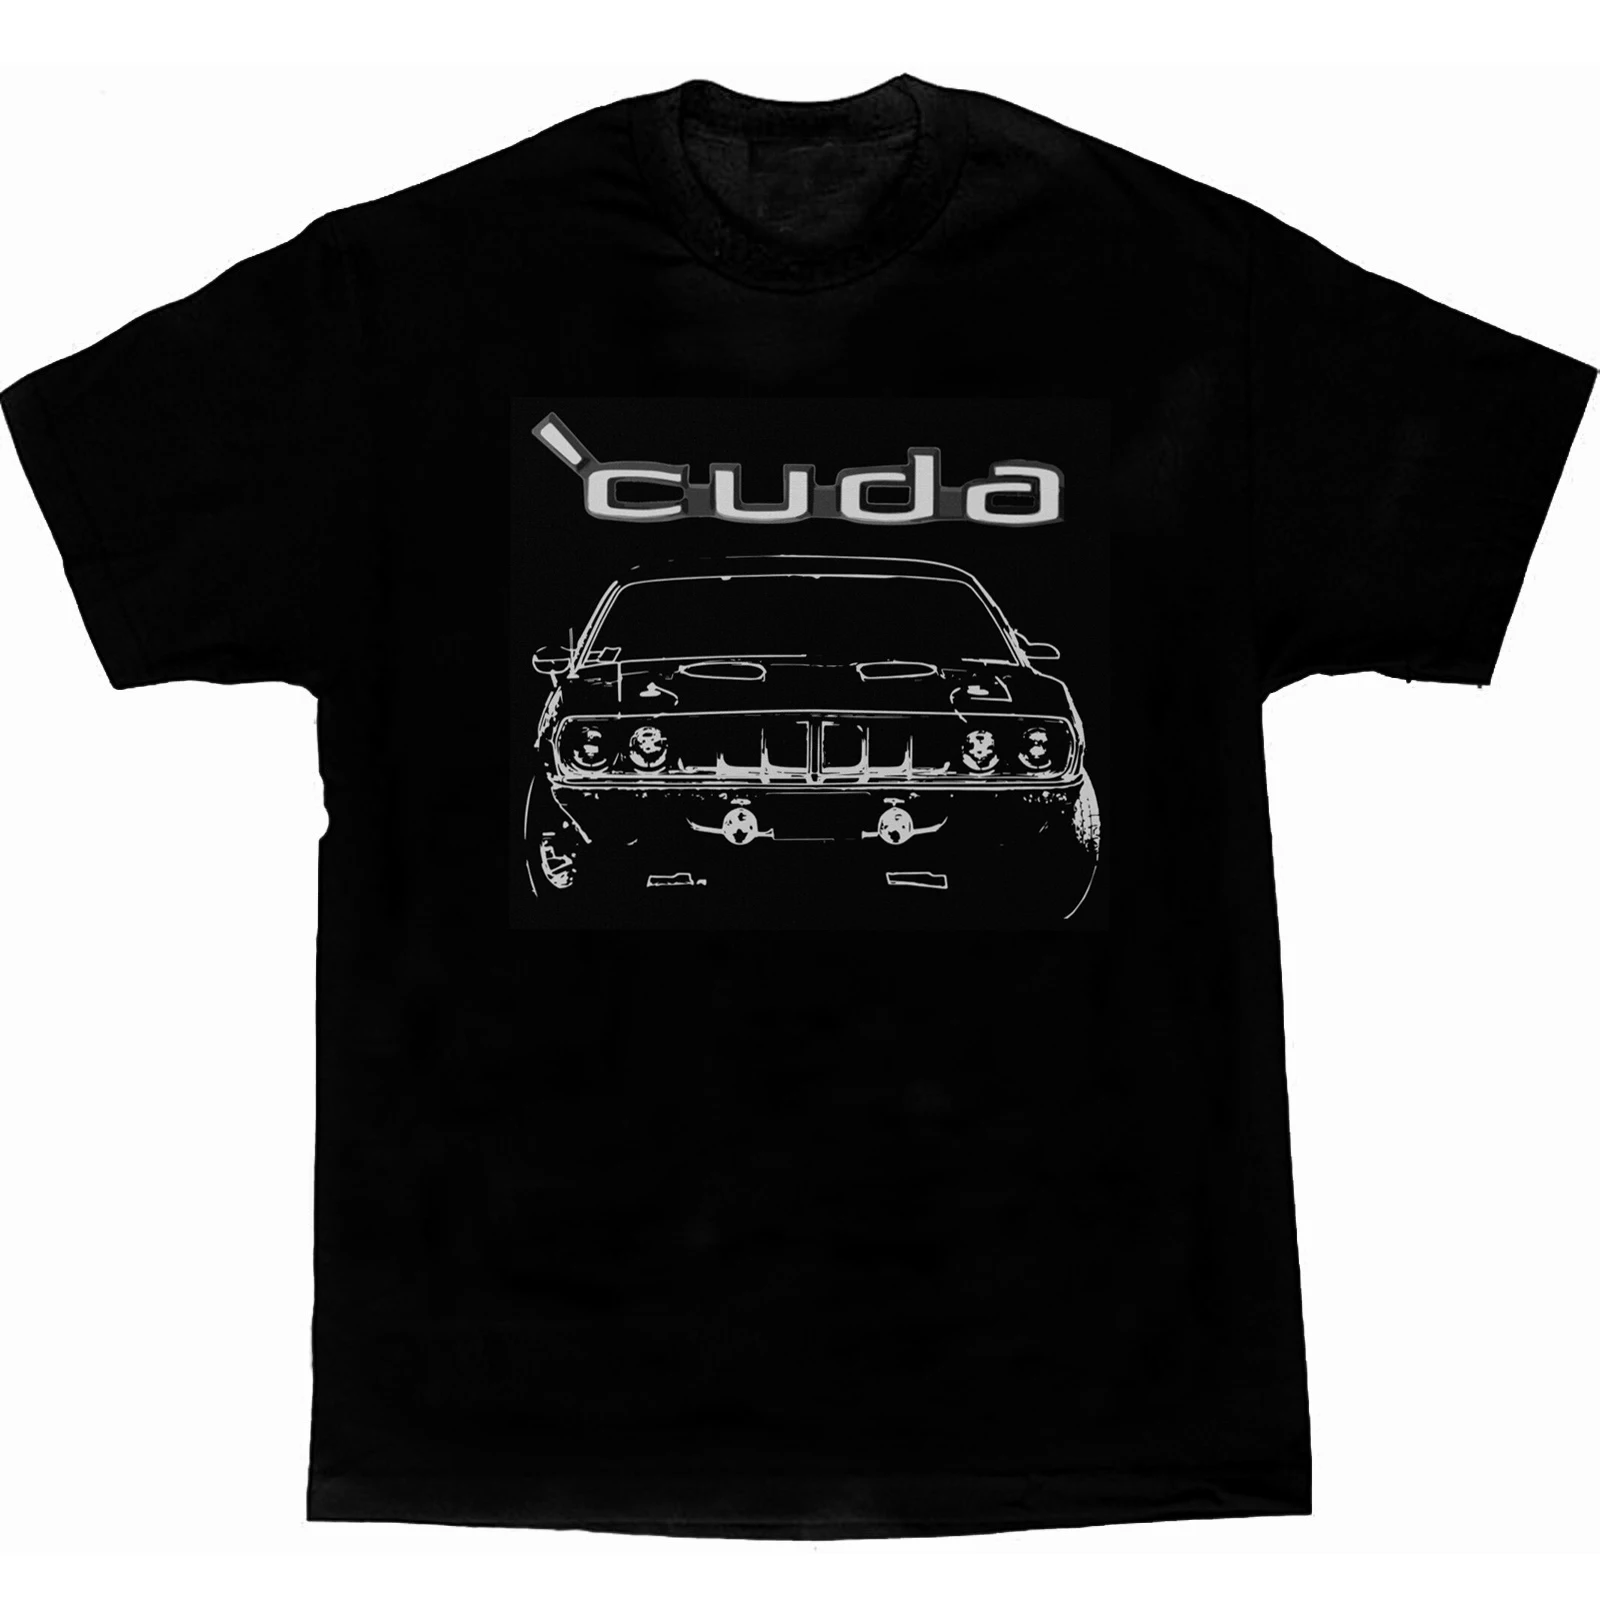 

Cuda 1971 Винтажная футболка для коллекционеров мышечных машин, Повседневная футболка с коротким рукавом из 100% хлопка, с круглым вырезом, летняя мужская футболка, размеры